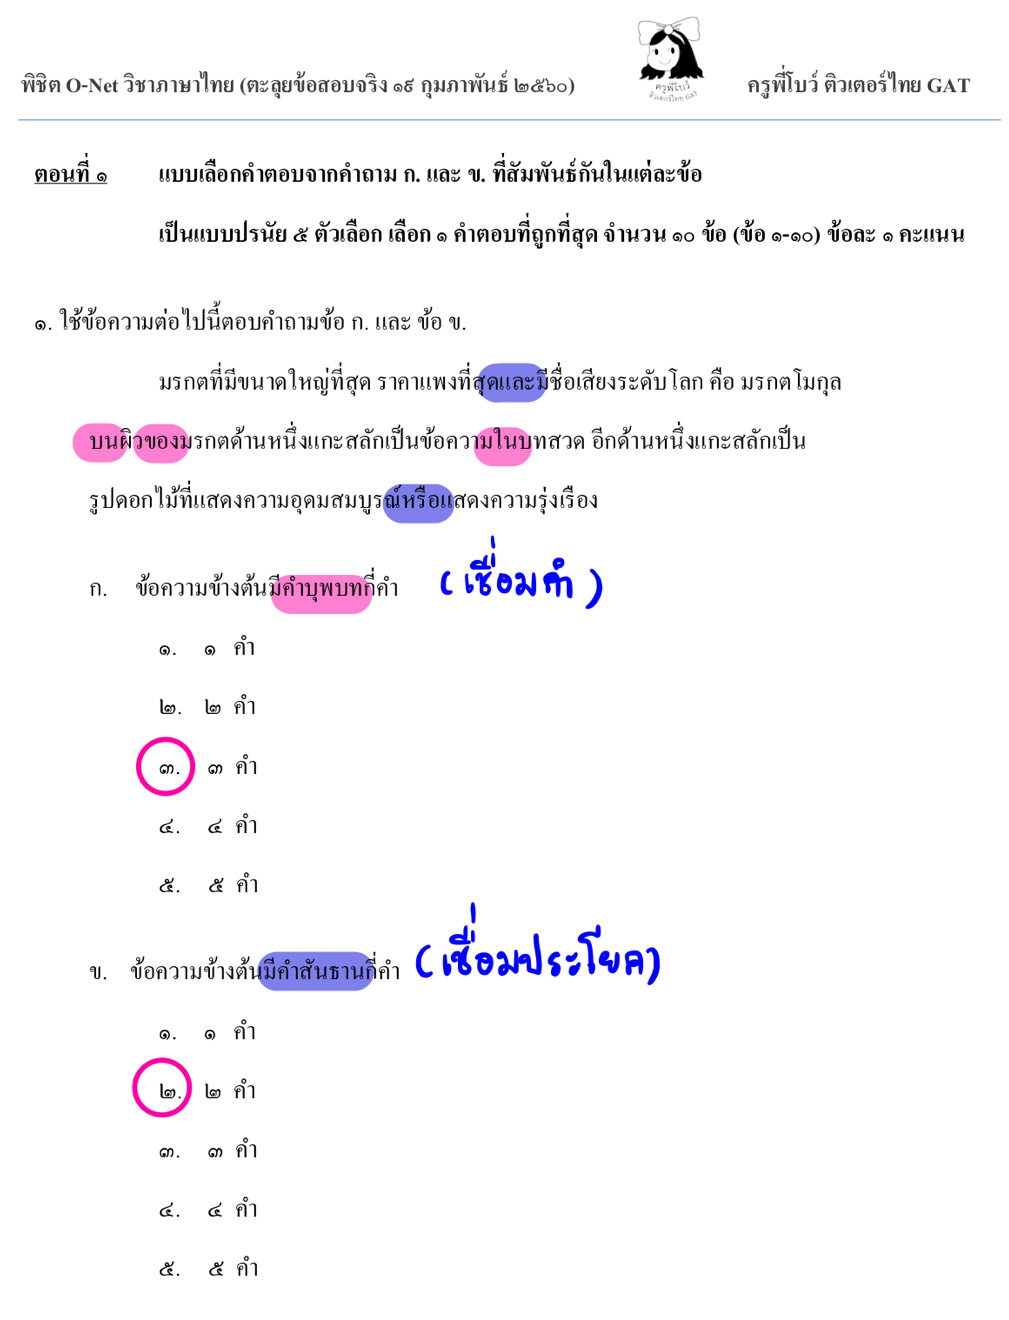 เฉลยข้อสอบ O-NET วิชาภาษาไทย ปี 2560